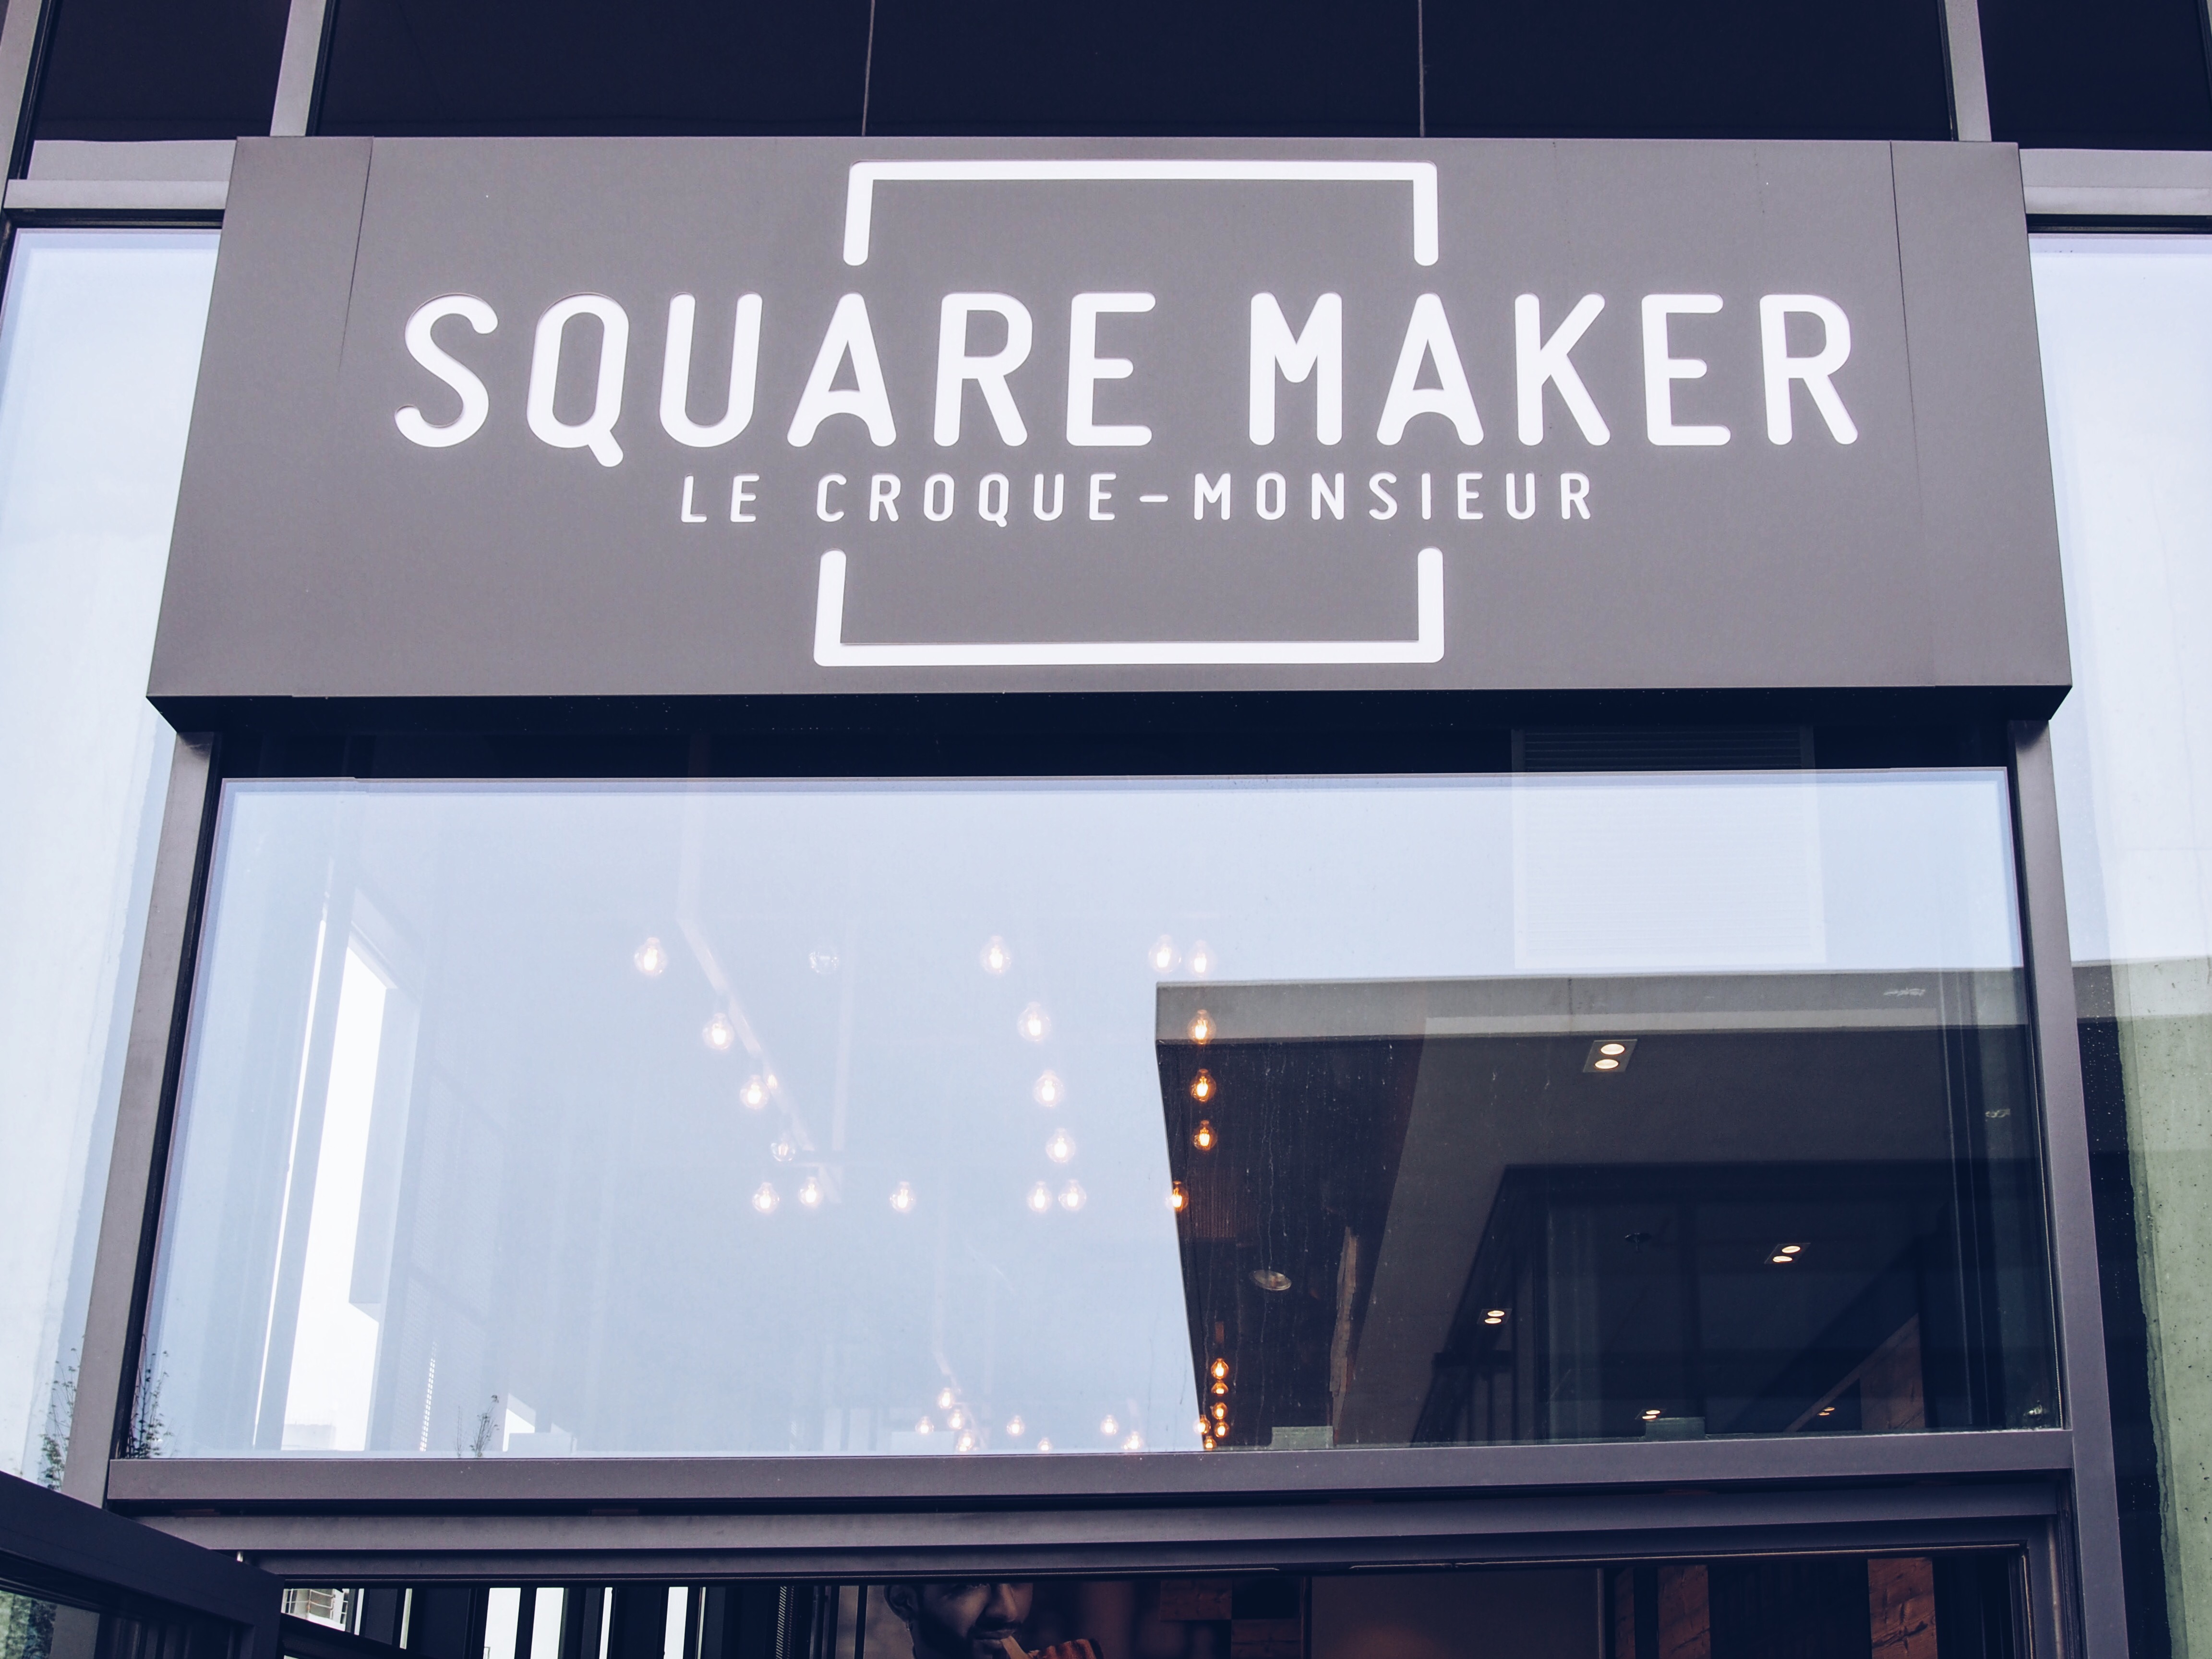 square-maker-avenue-83-toulon-la-valette-soprettylittlethings-croque-monsieur-restaurant